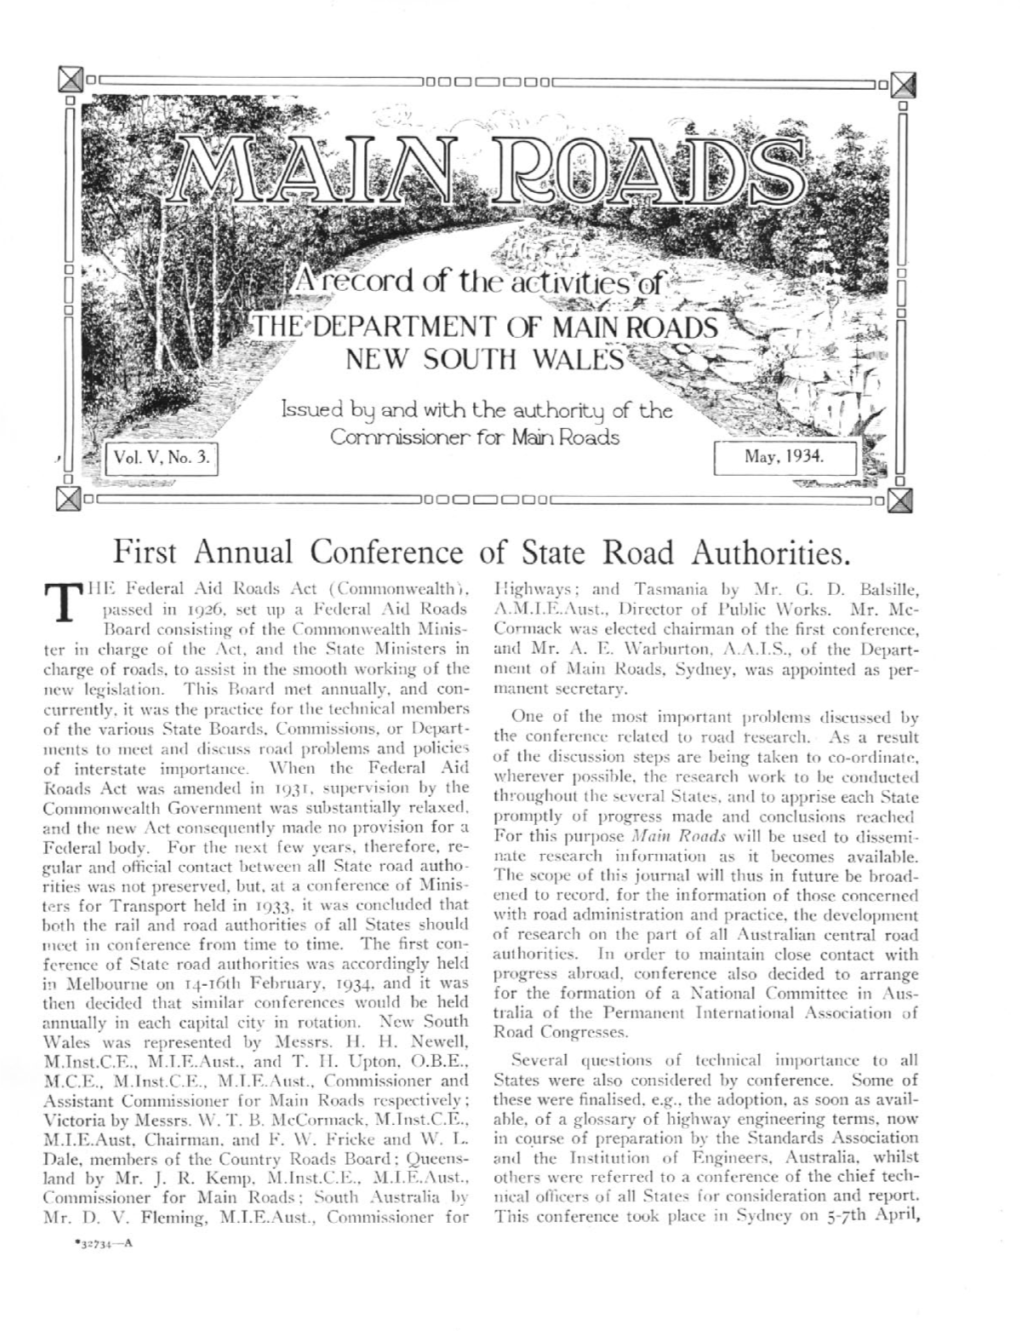 May 1934, Volume 5, No. 3